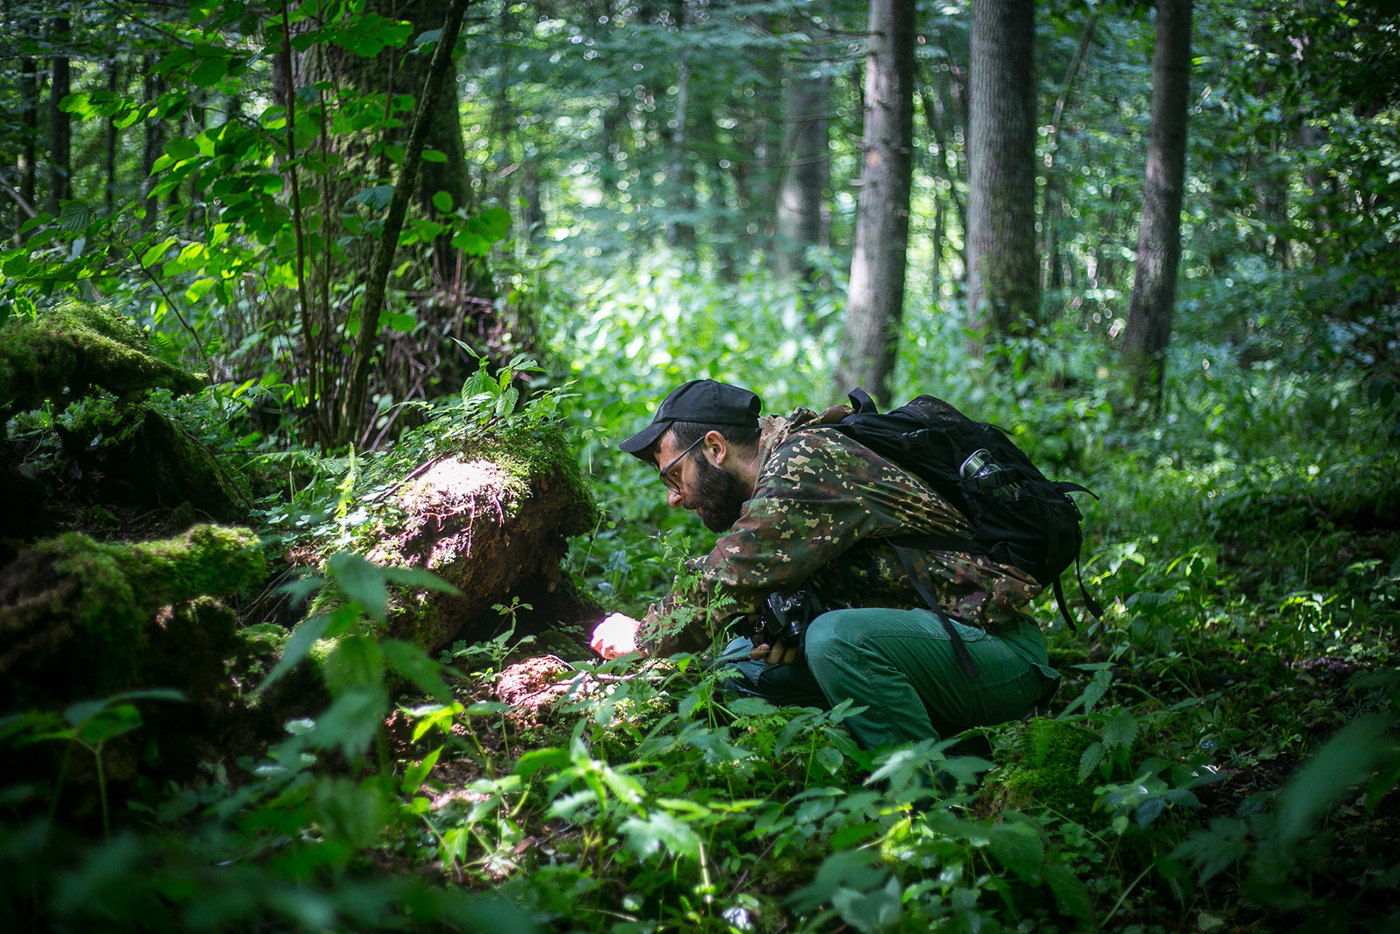 Edukator przyrodniczy Stanisław Łubieński pochyla się nad zmurszałym pniem i ogląda coś bacznie. Znajduje się w zielonym lesie.